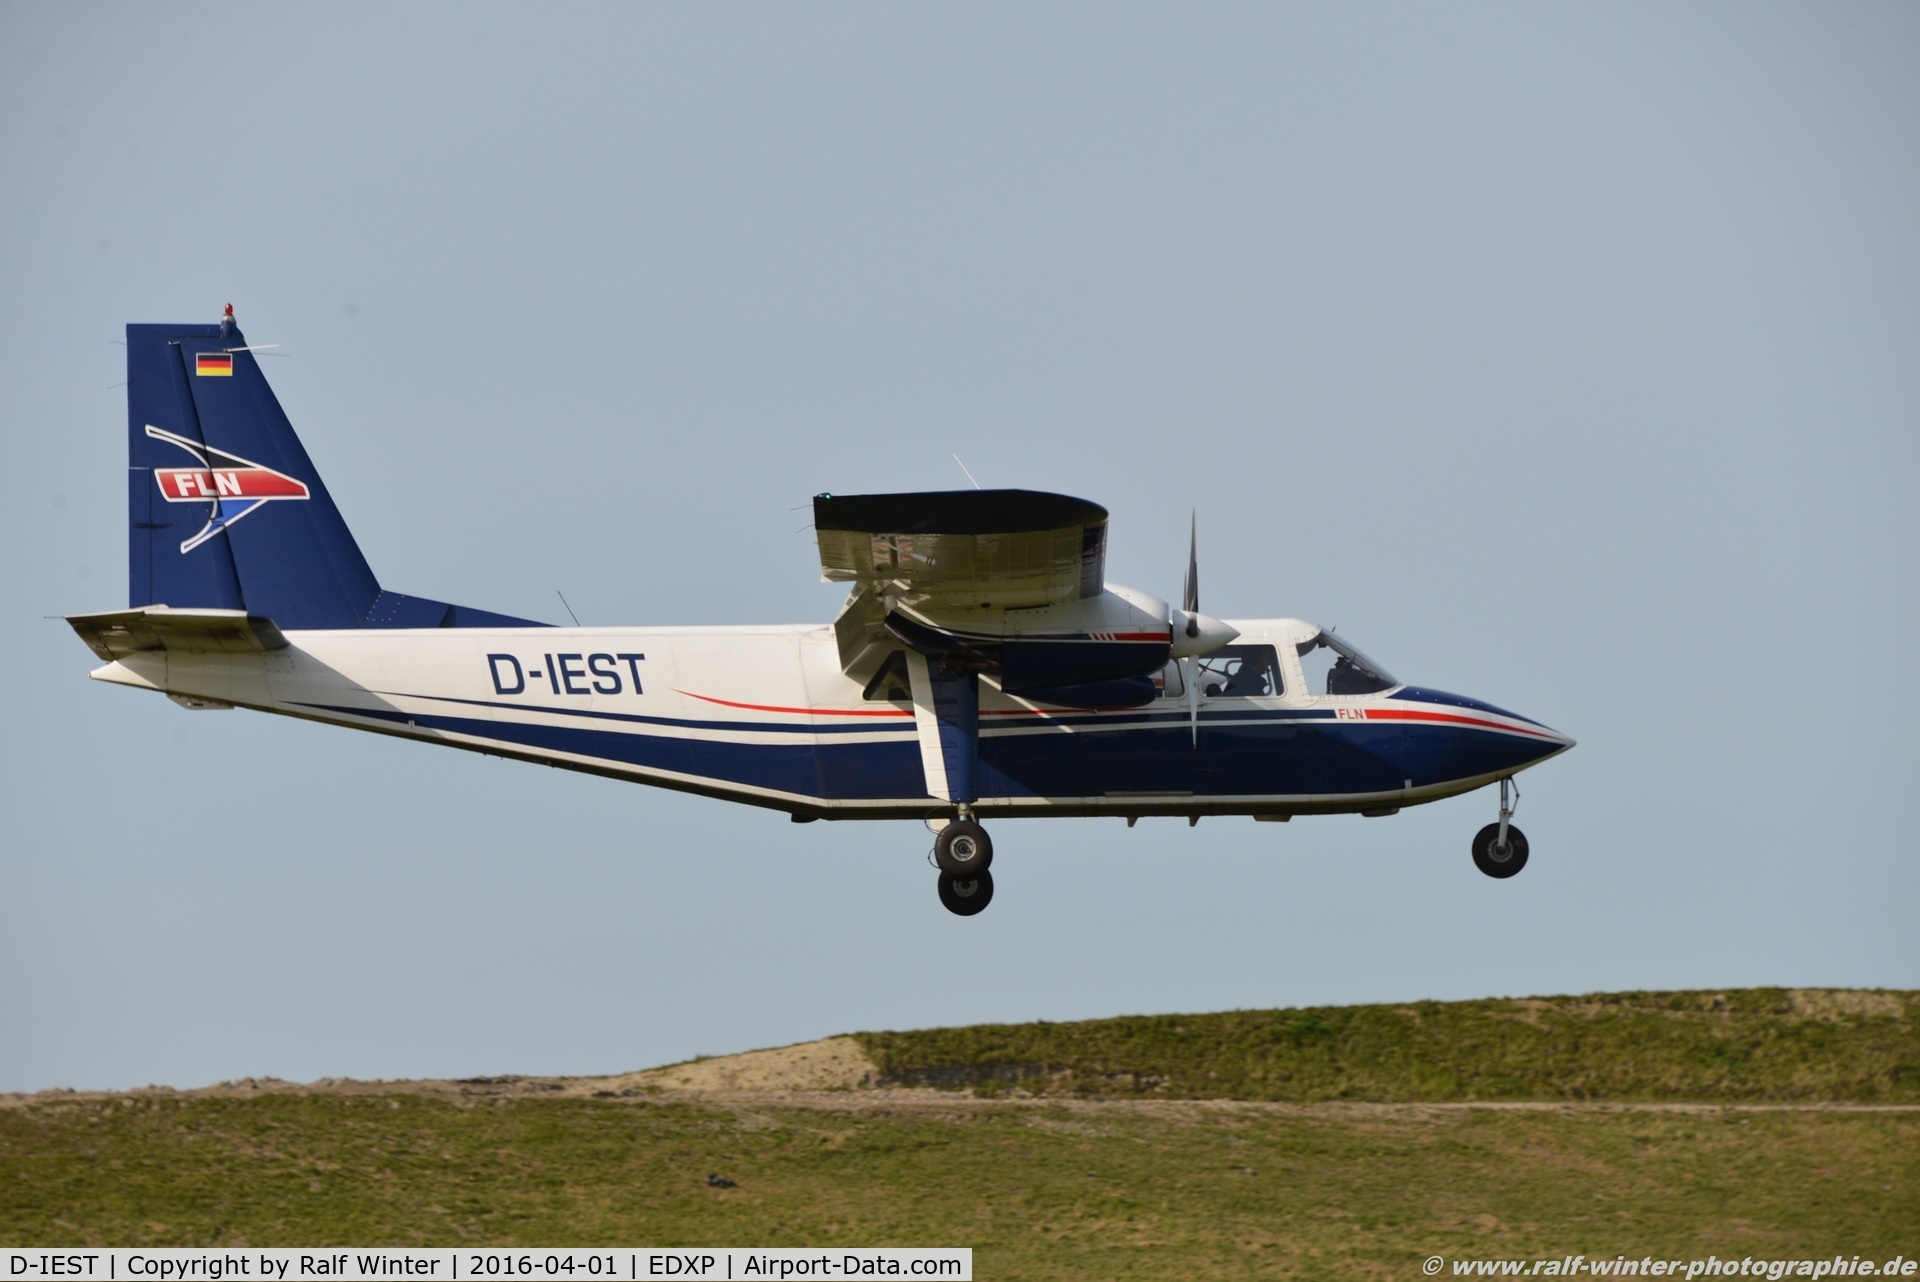 D-IEST, 1991 Pilatus Britten-Norman BN-2B-26 Islander C/N 2253, Britten-Norman BN-2 Islander - FLN Frisia -Luftverkehr Norddeich - 2253 - D-IEST - 01.04.2016 - Harle EDXP